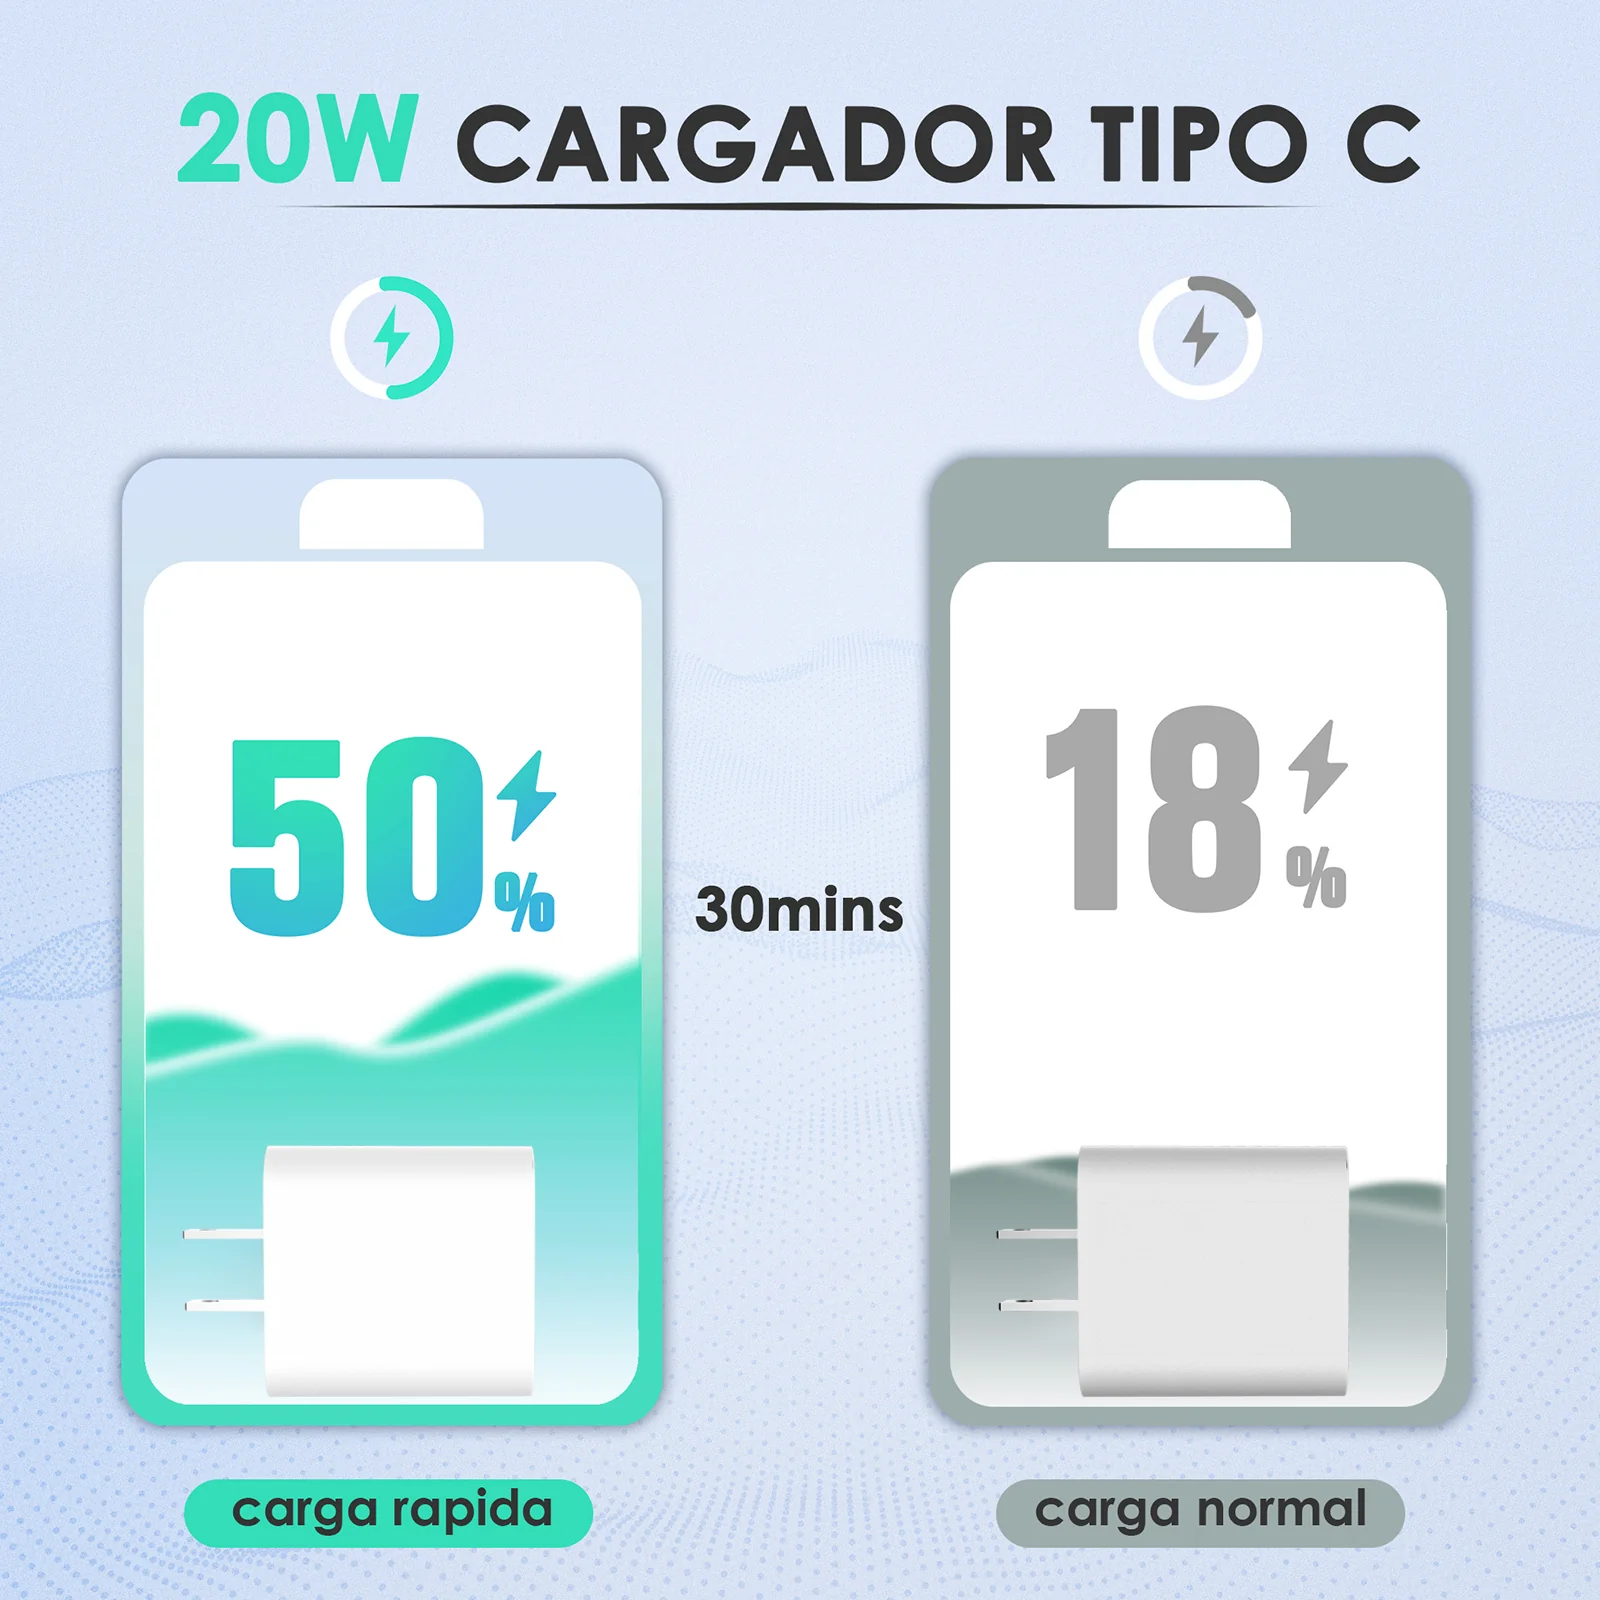 Cargador Iphone Carga Rapida 25W Completo - Luegopago